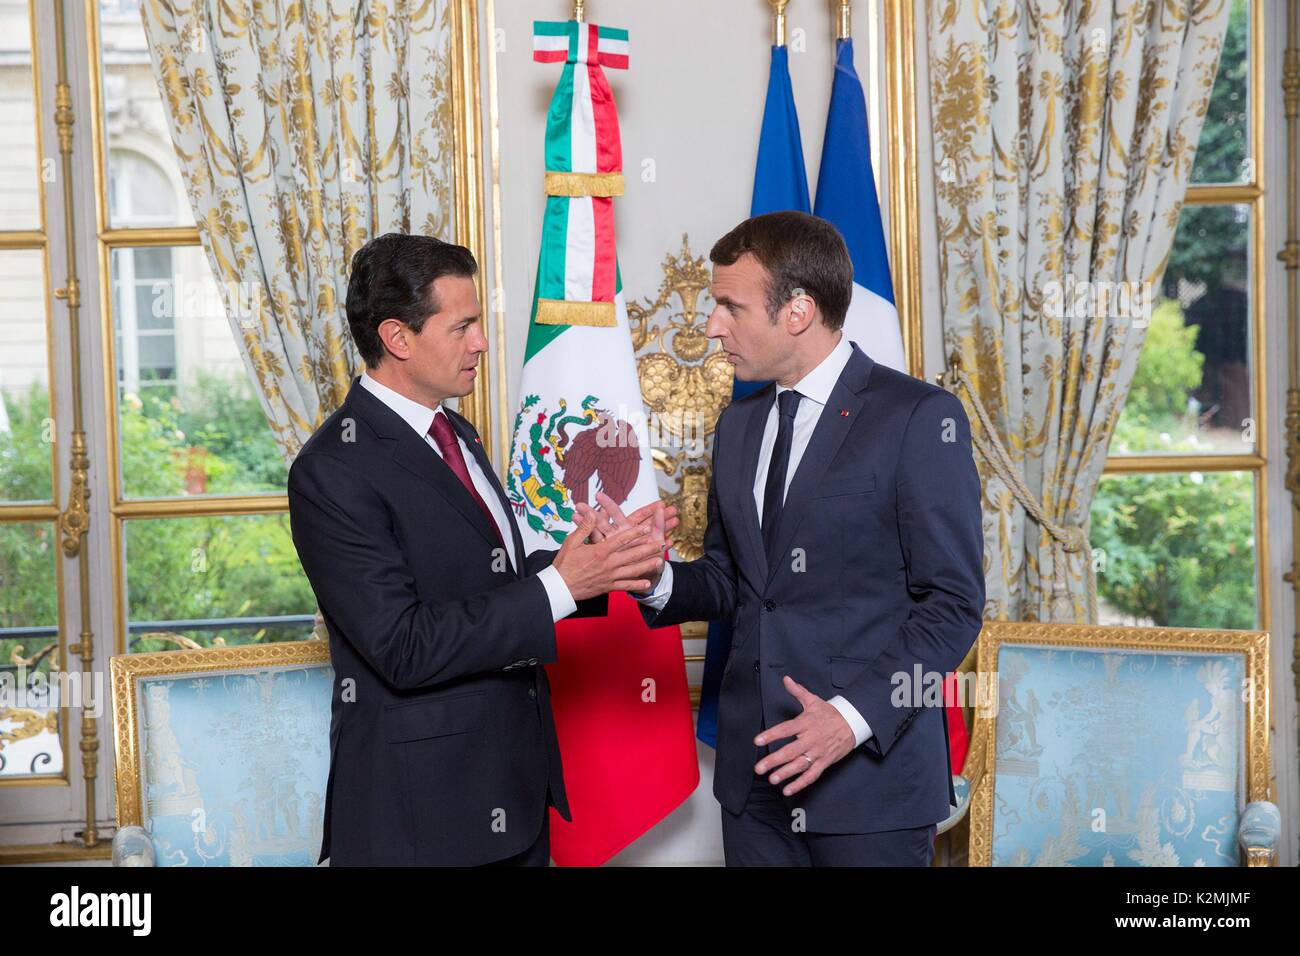 Le Président mexicain Enrique Pena Nieto, gauche, lors d'une réunion bilatérale avec le président français, Emmanuel Macron à l'Elysée le 7 juillet 2017 à Paris, France. Banque D'Images